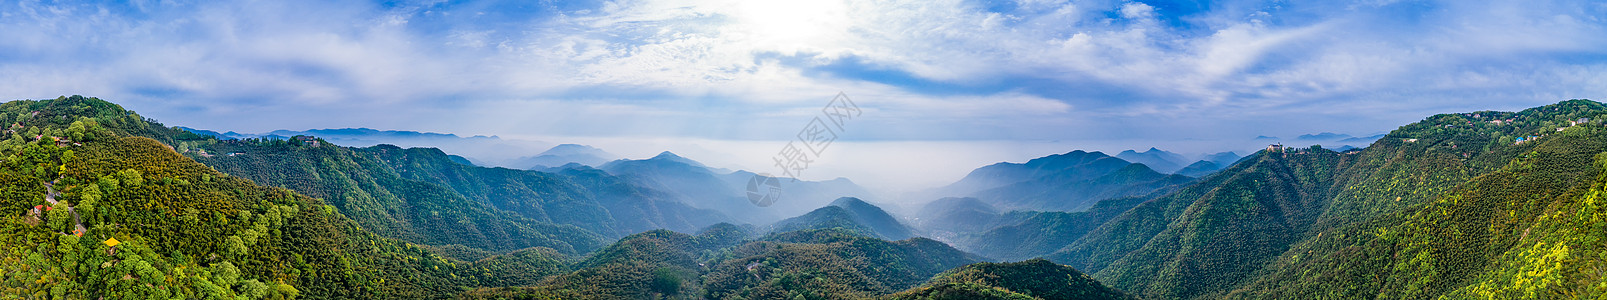 世界杯壁纸莫干山顶峰全景自然风景背景